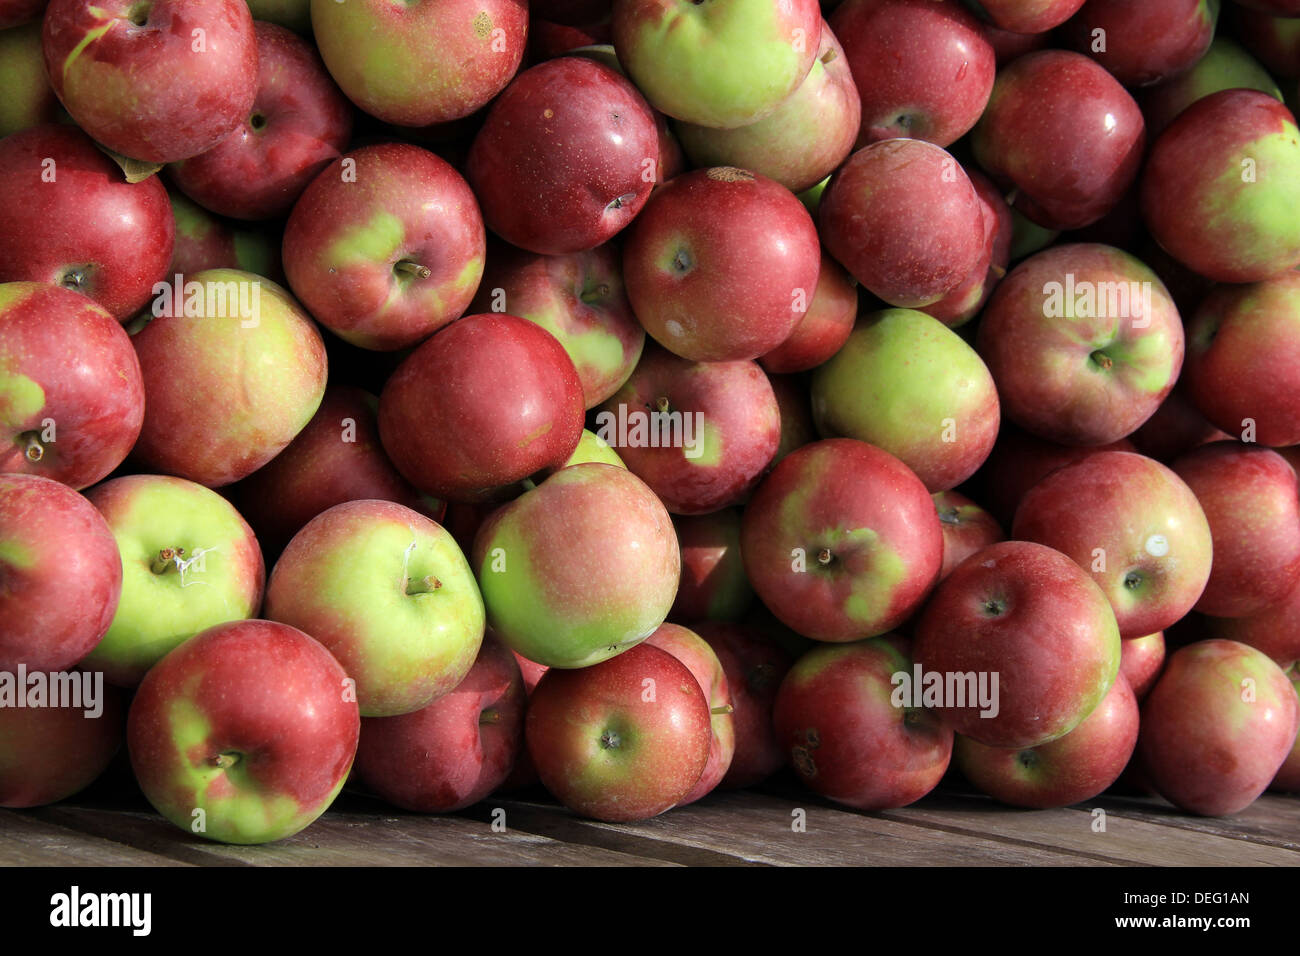 Vecchia cassa in legno piena di mele Macintosh, raccolti da alberi intorno al frutteto di mele, facile per i clienti di acquistare per la cottura o mangiare crudo. Foto Stock